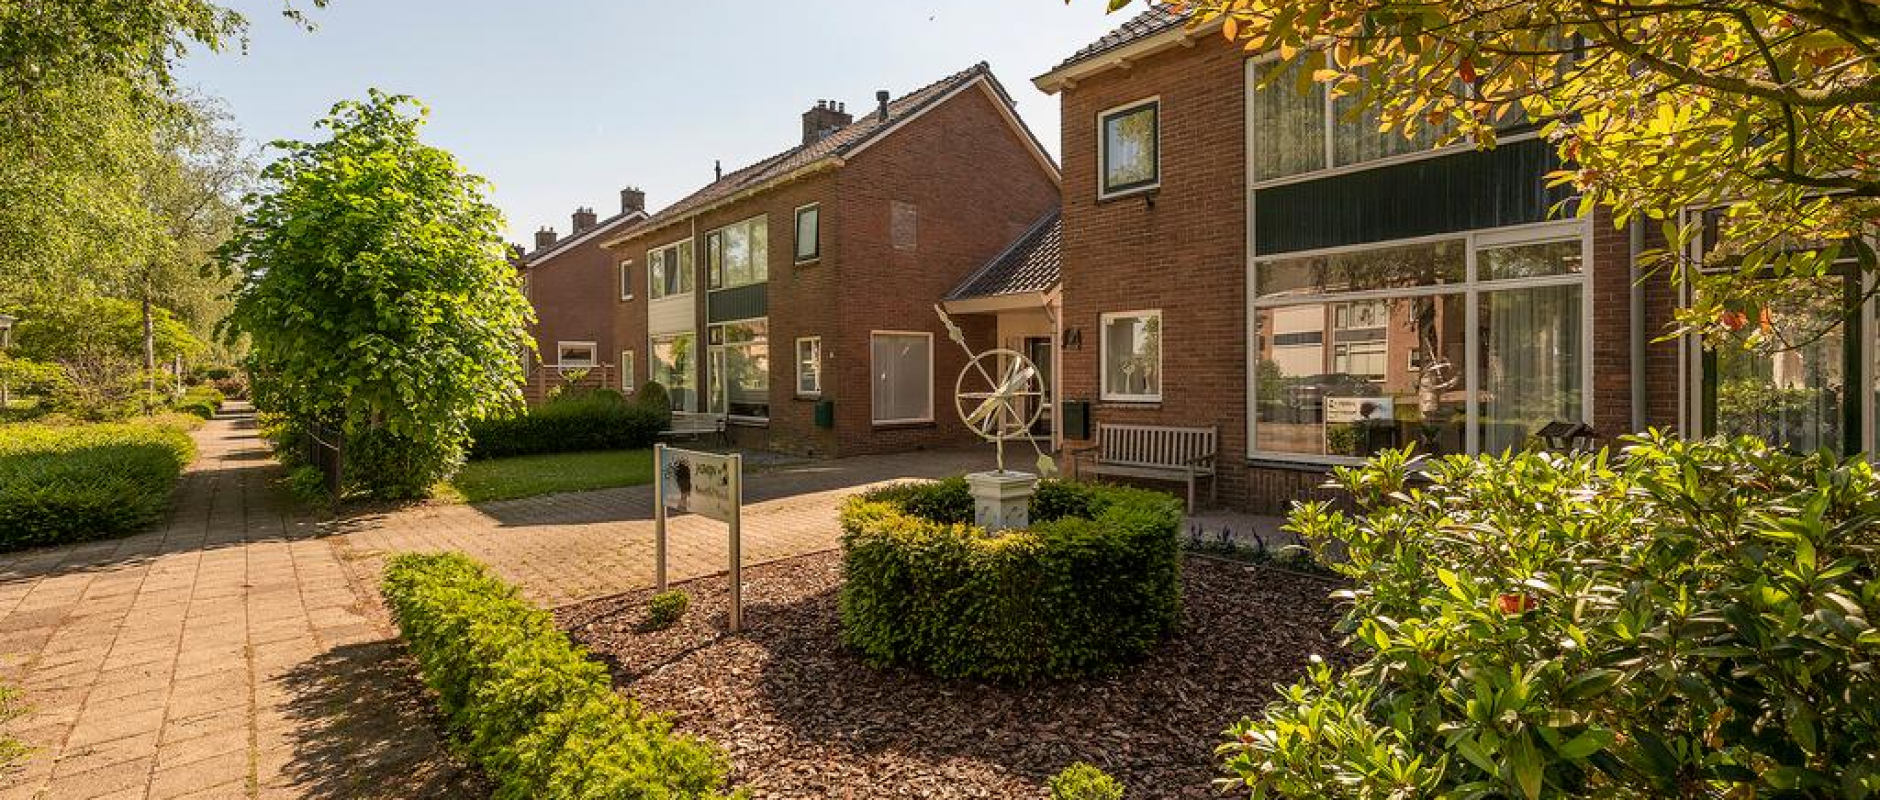 Woning te koop aan de Veldhoekweg 4 te Zwolle